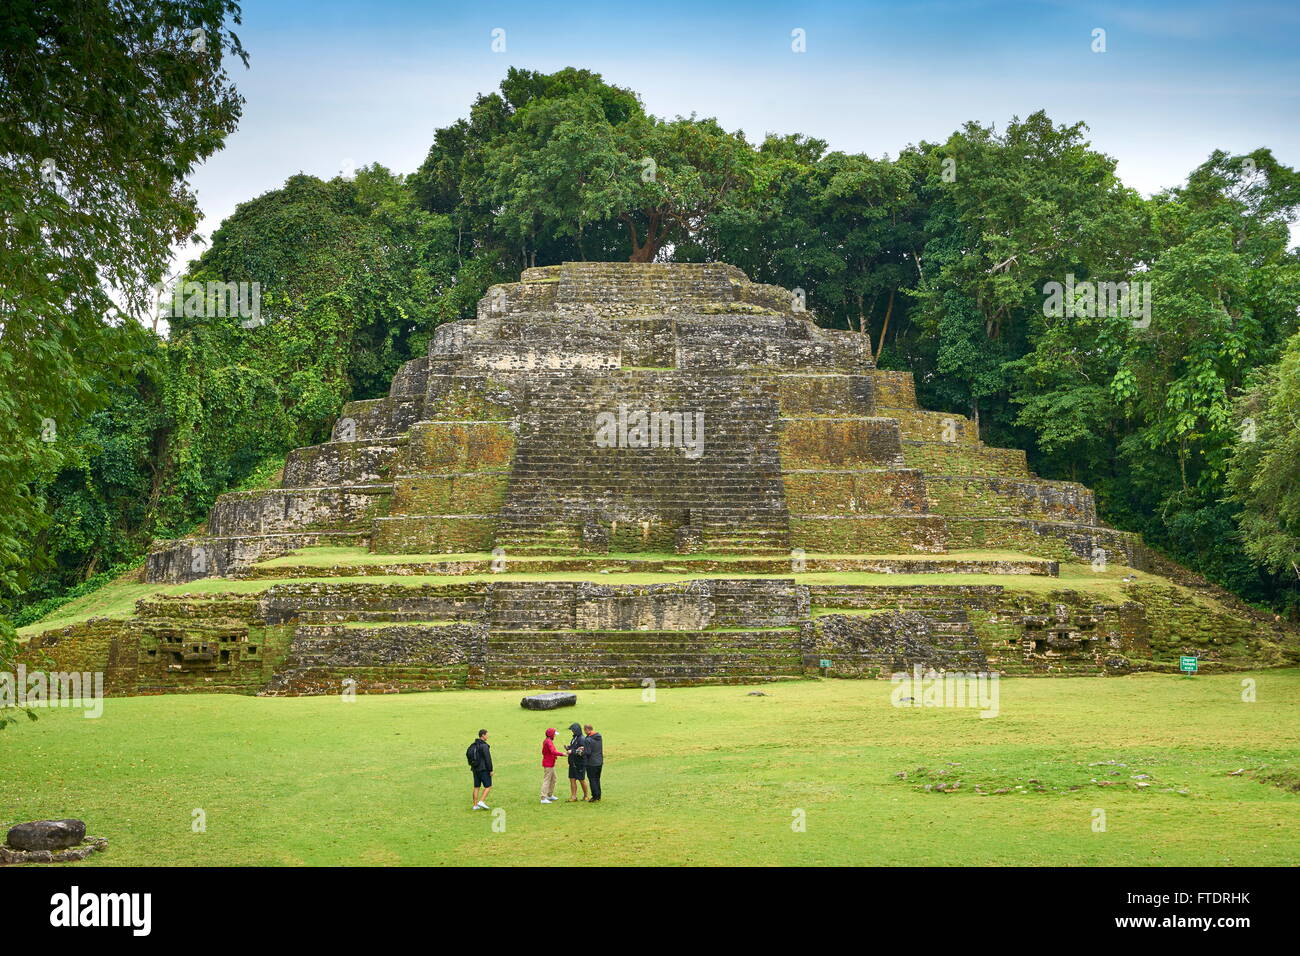 Belize - Jaguar Temple in Lamanai, Ancient Maya Ruins Stock Photo